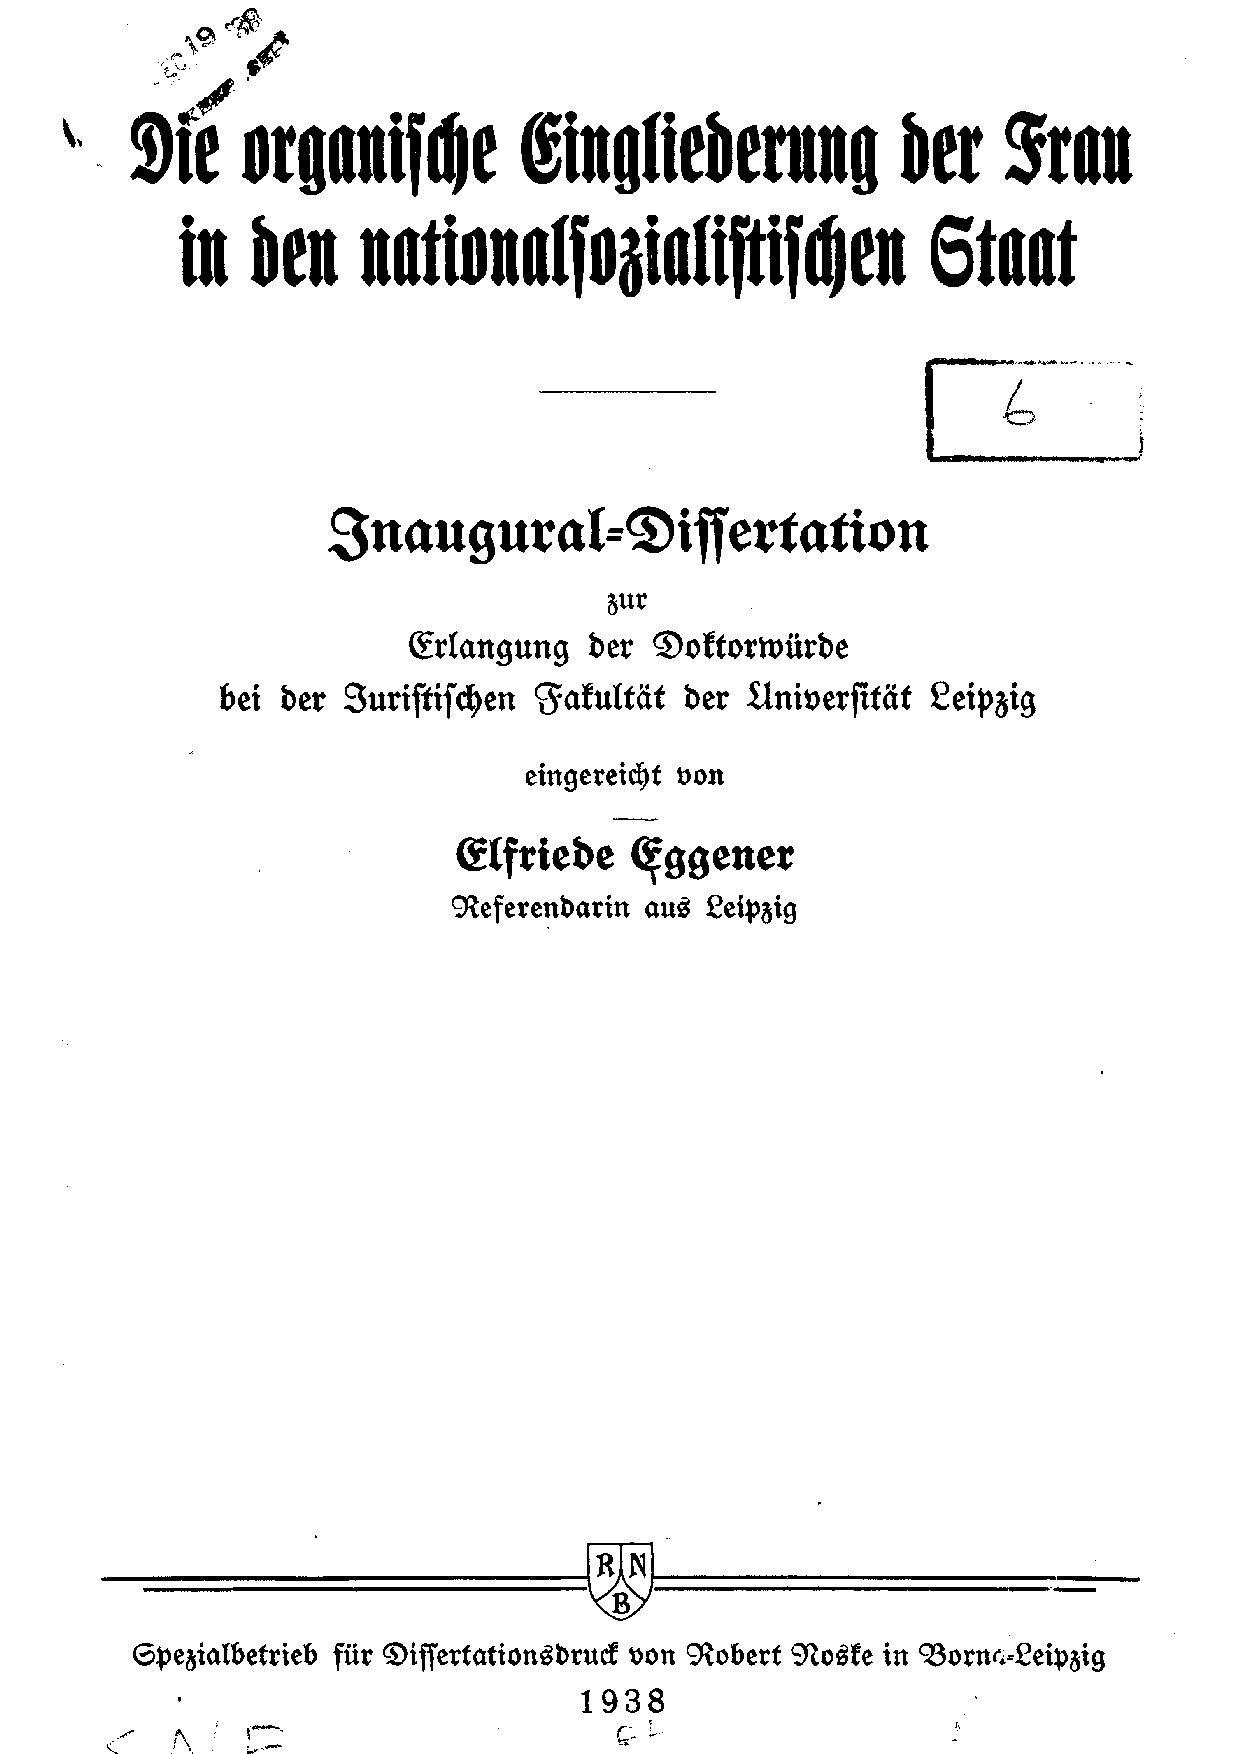 Die organische Eingliederung der Frau in den nationalsozialistischen Staat (1938, 87 S., Scan, Fraktur)